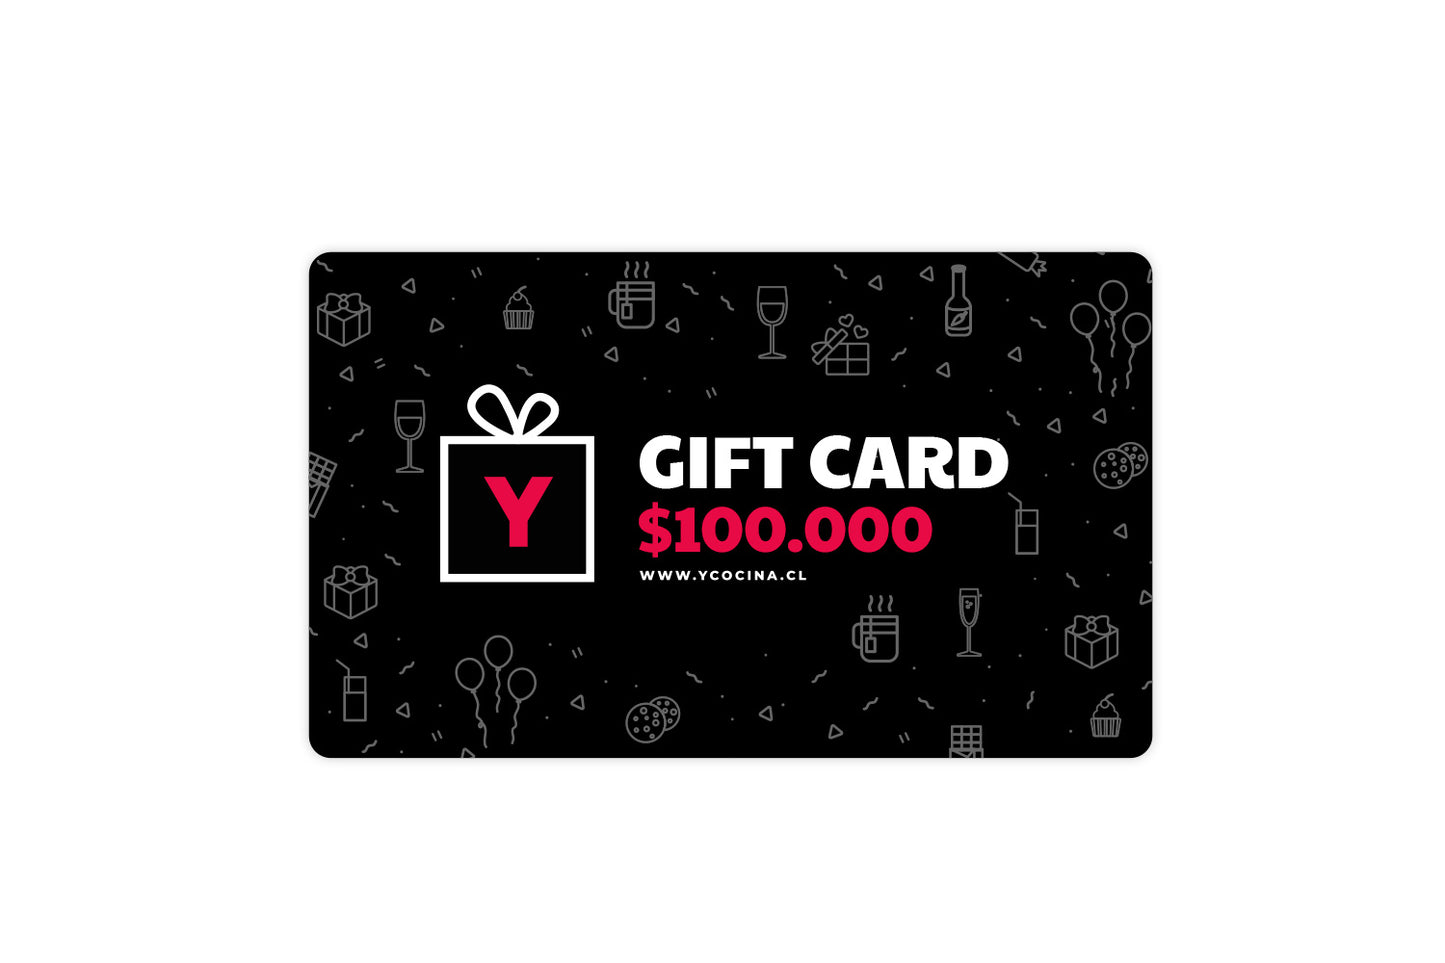 Gift Card Ycocina